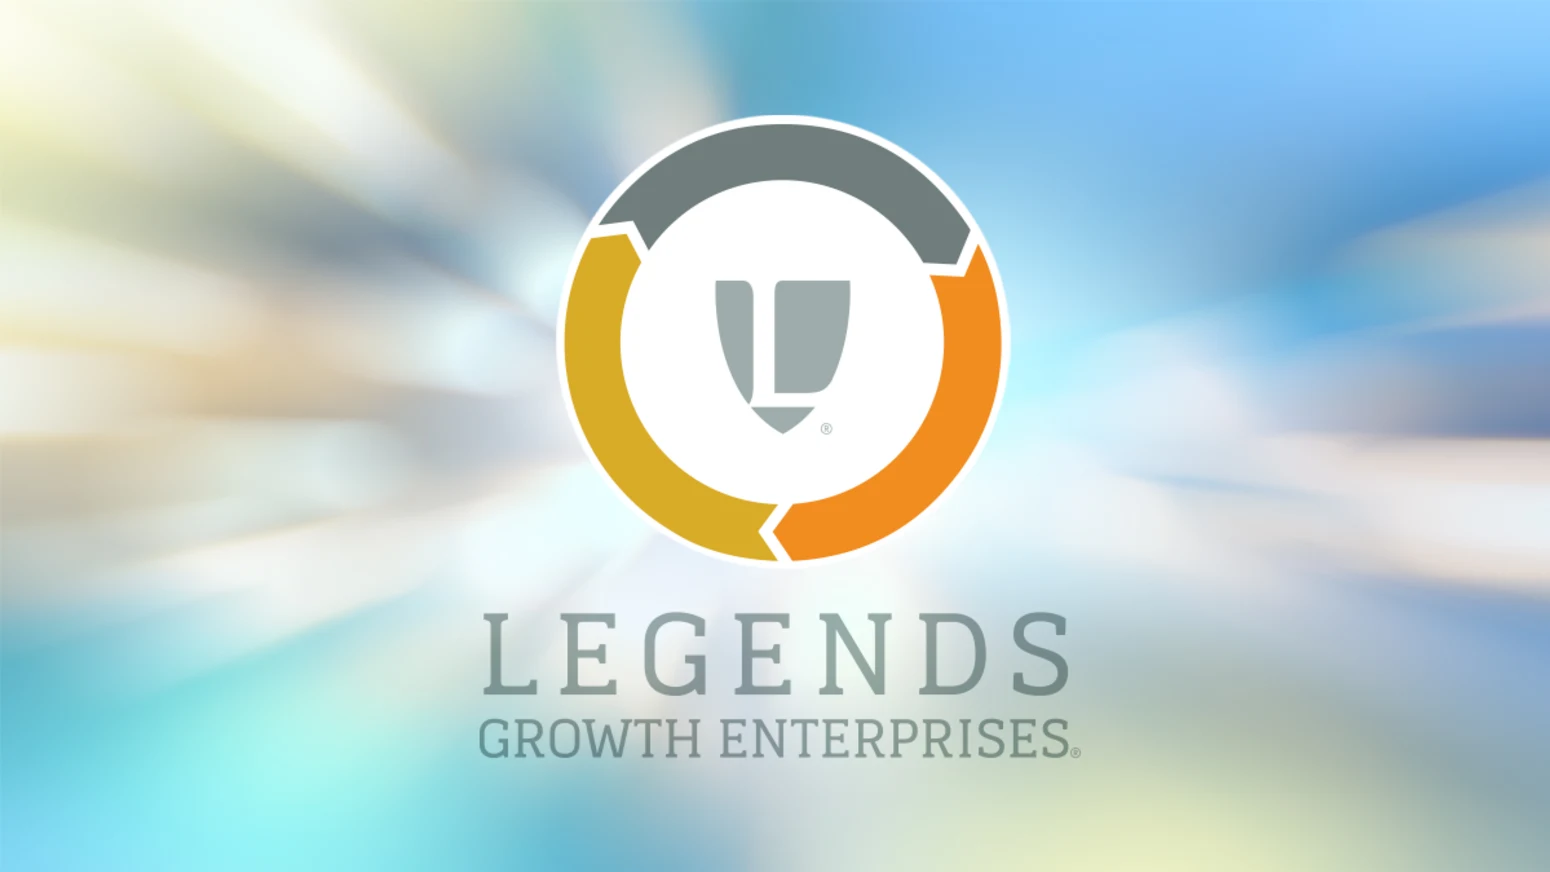 Legends Launches New Growth Enterprises Division